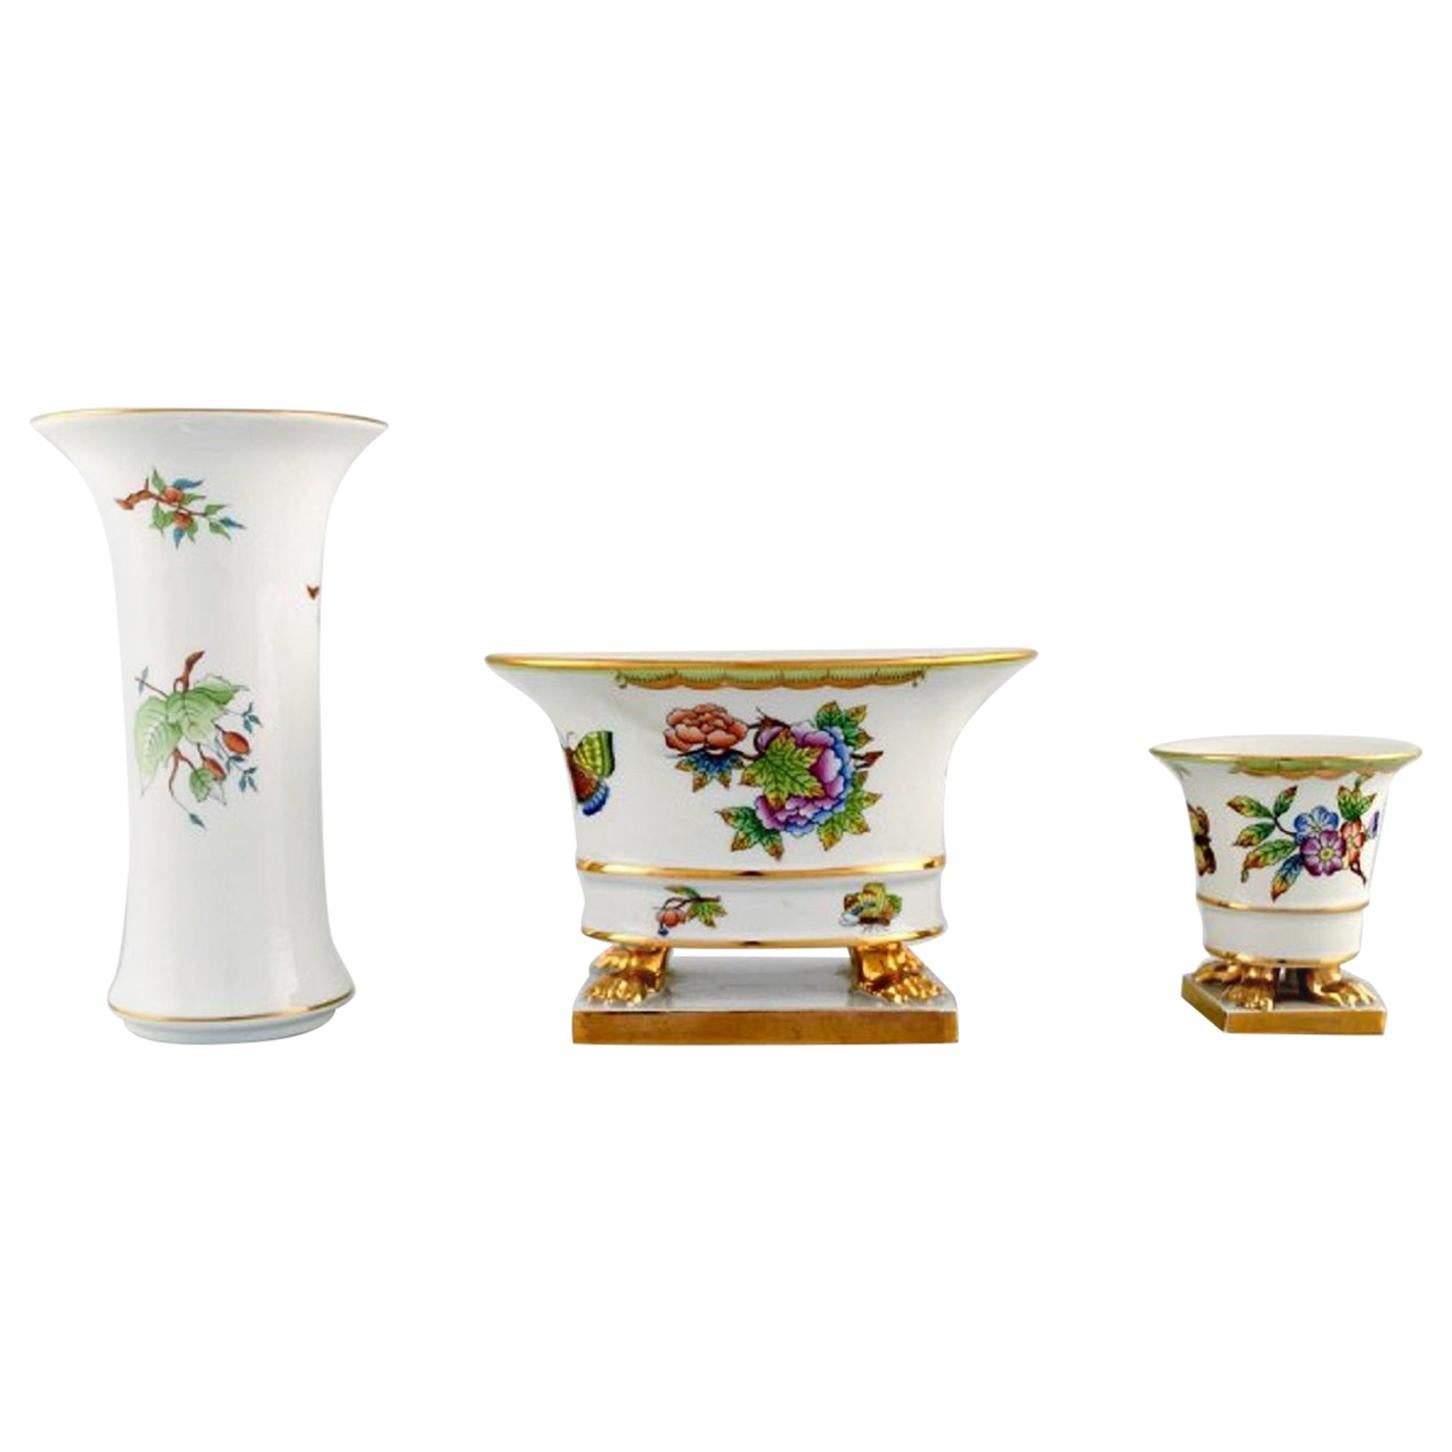 Drei Herend-Vasen aus handbemaltem Porzellan mit Blumen und Golddekoration